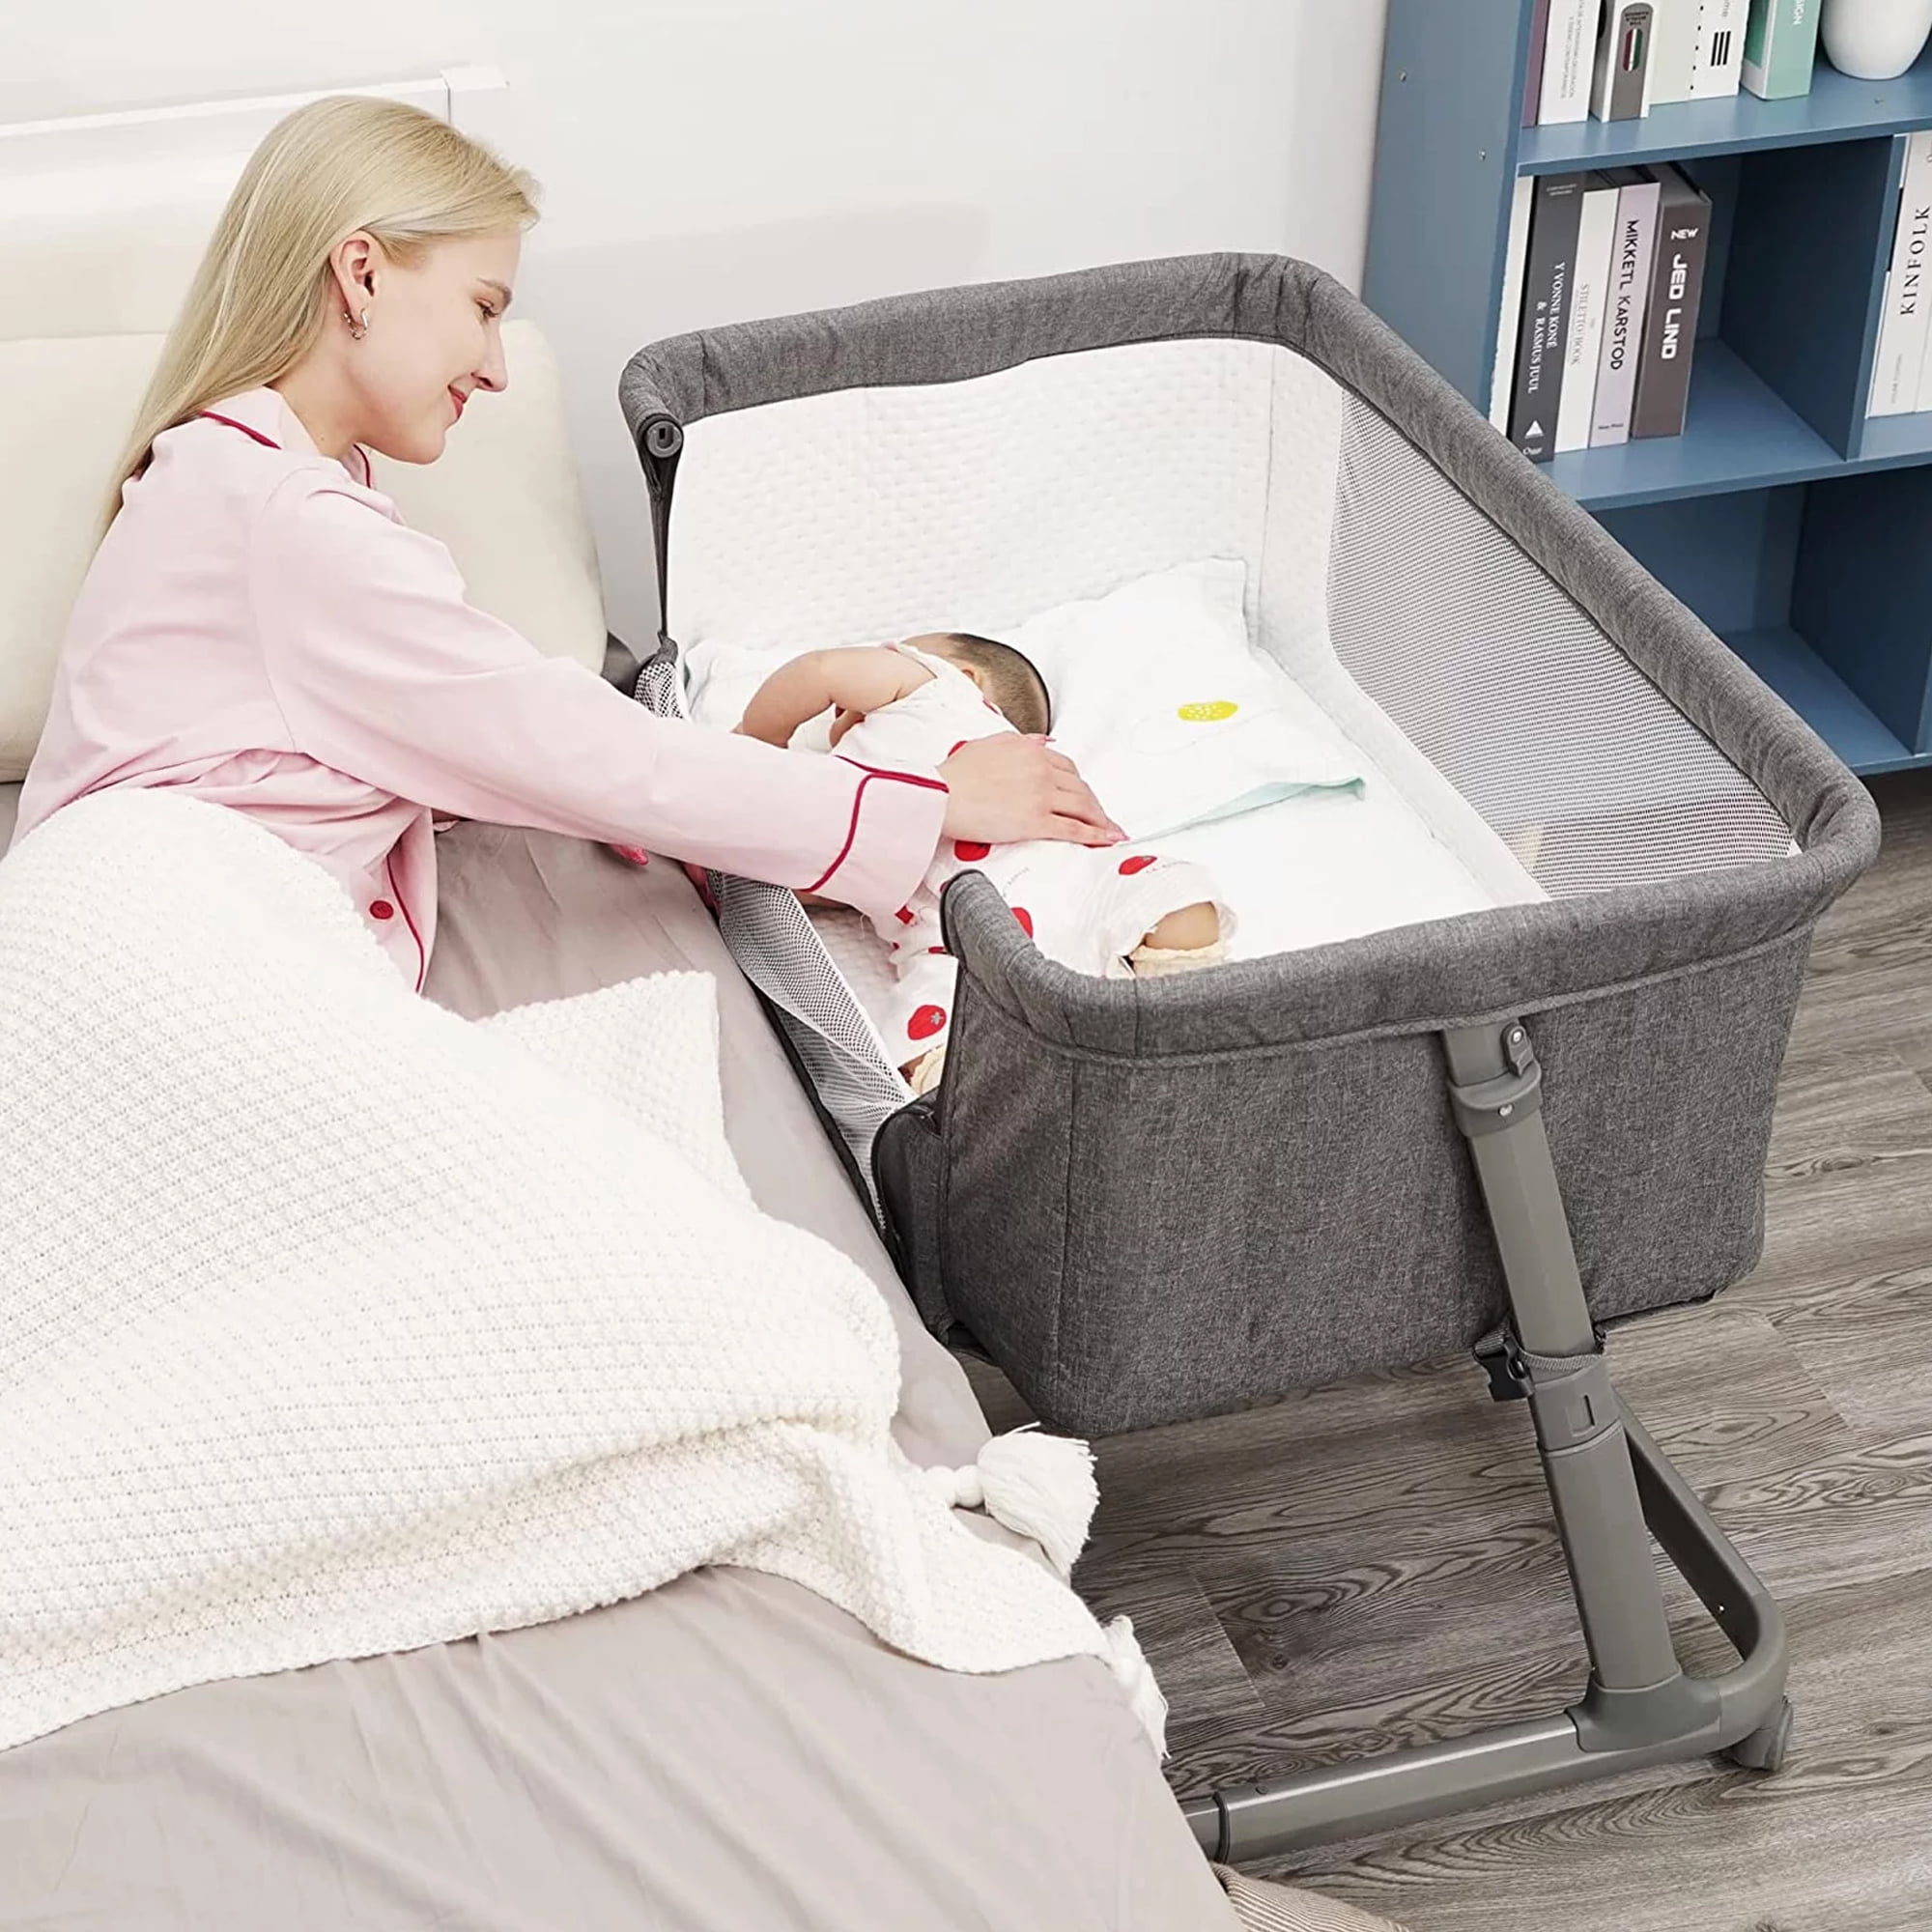 Kostuum Celsius Aanhankelijk Pamo Babe Unisex Infant Bedside Sleeper Bassinet with Wheels and Floding  Frame For 0-9 months Baby (Grey) - Walmart.com